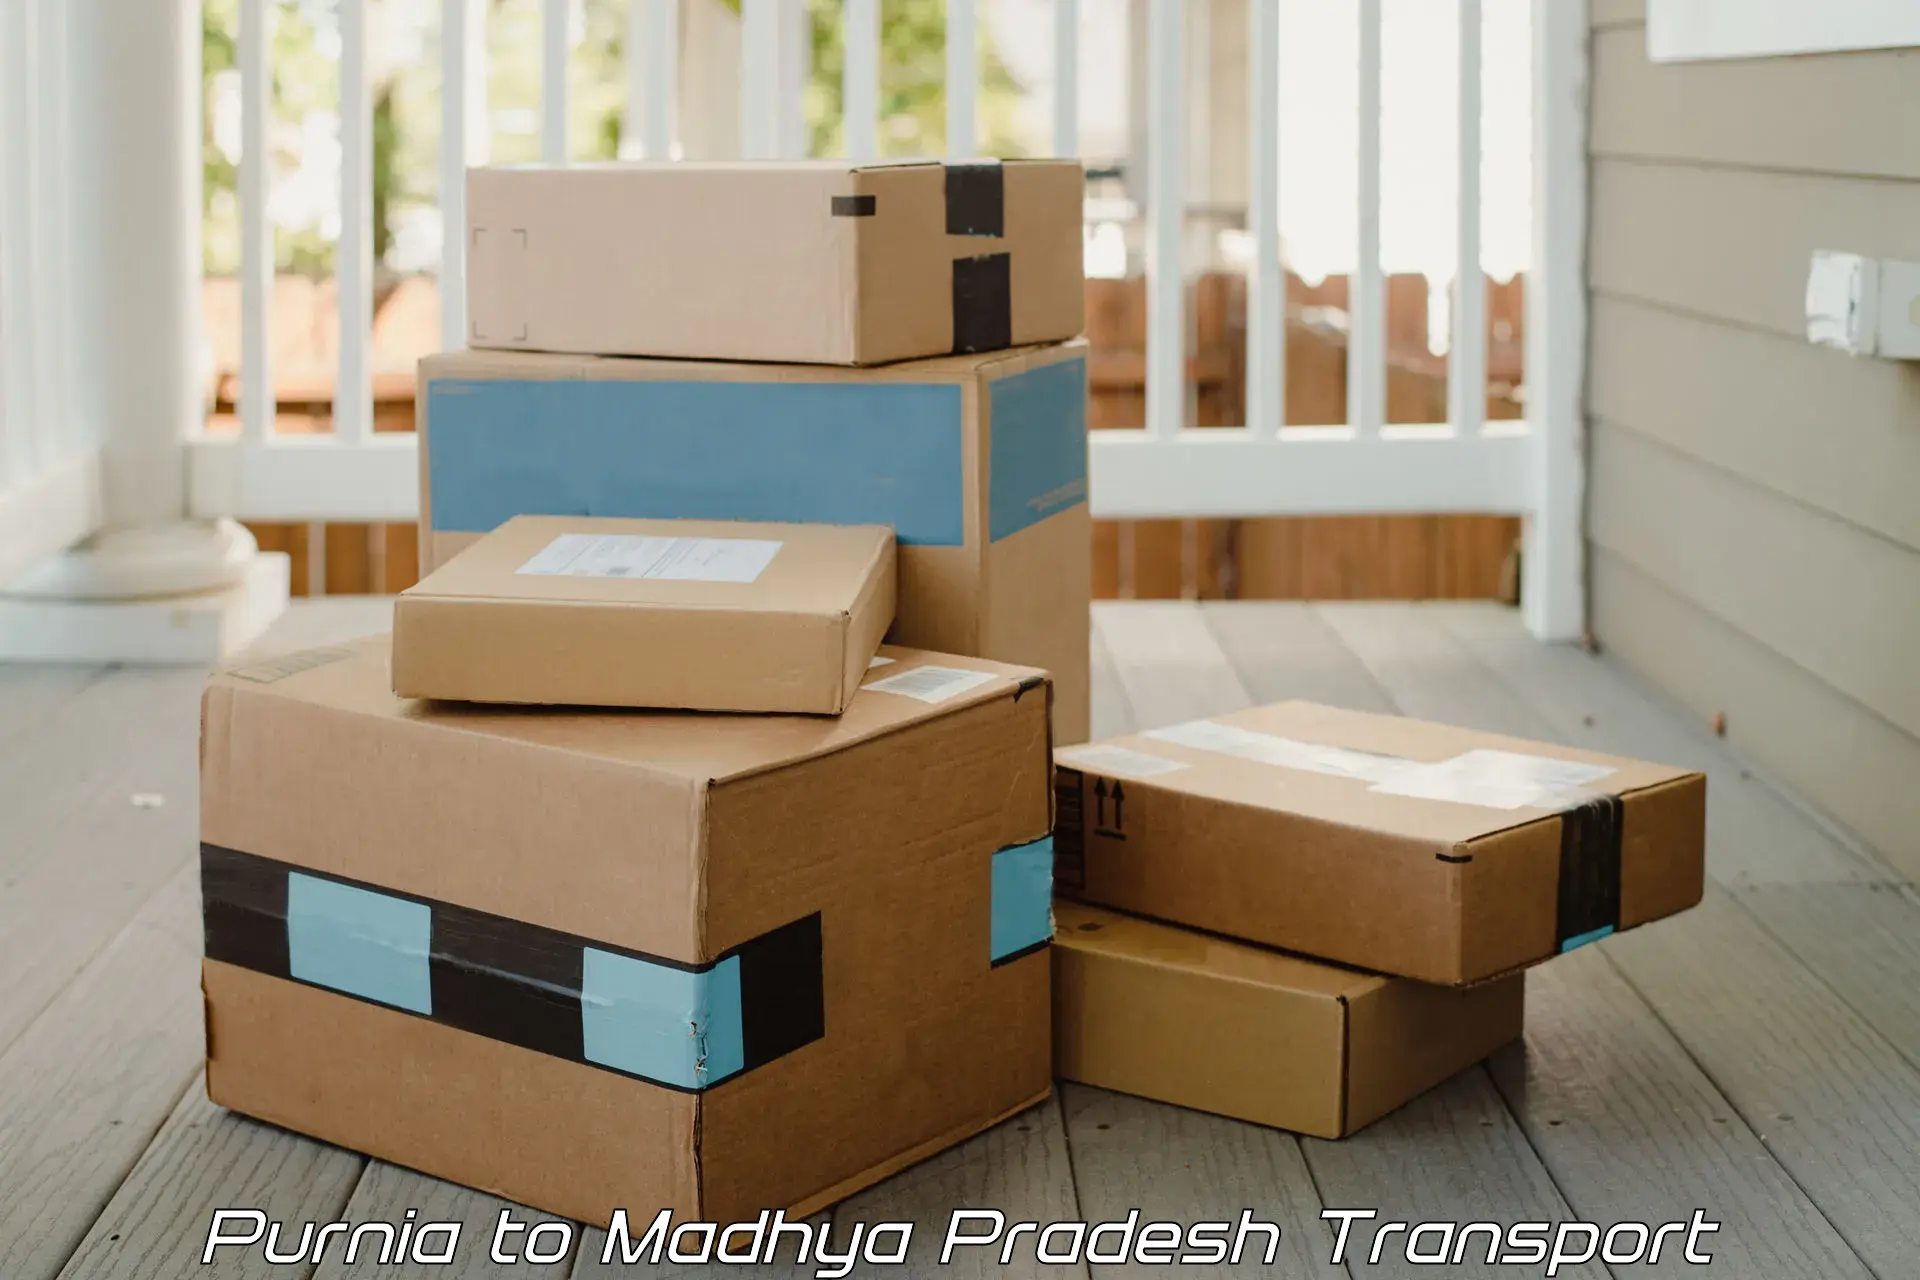 Delivery service Purnia to Morar